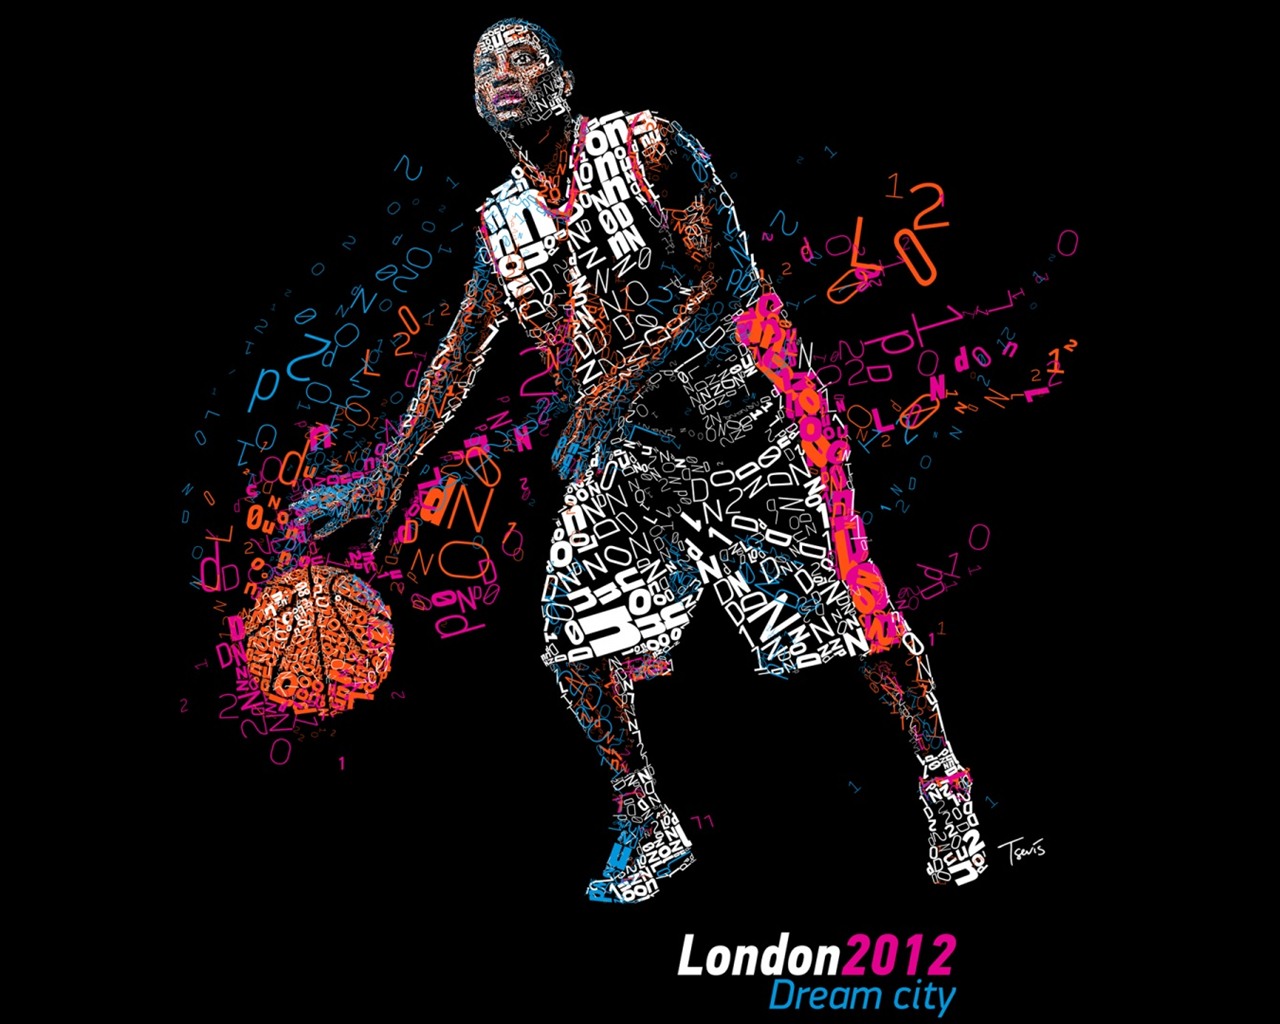 Londres 2012 Olimpiadas fondos temáticos (1) #11 - 1280x1024